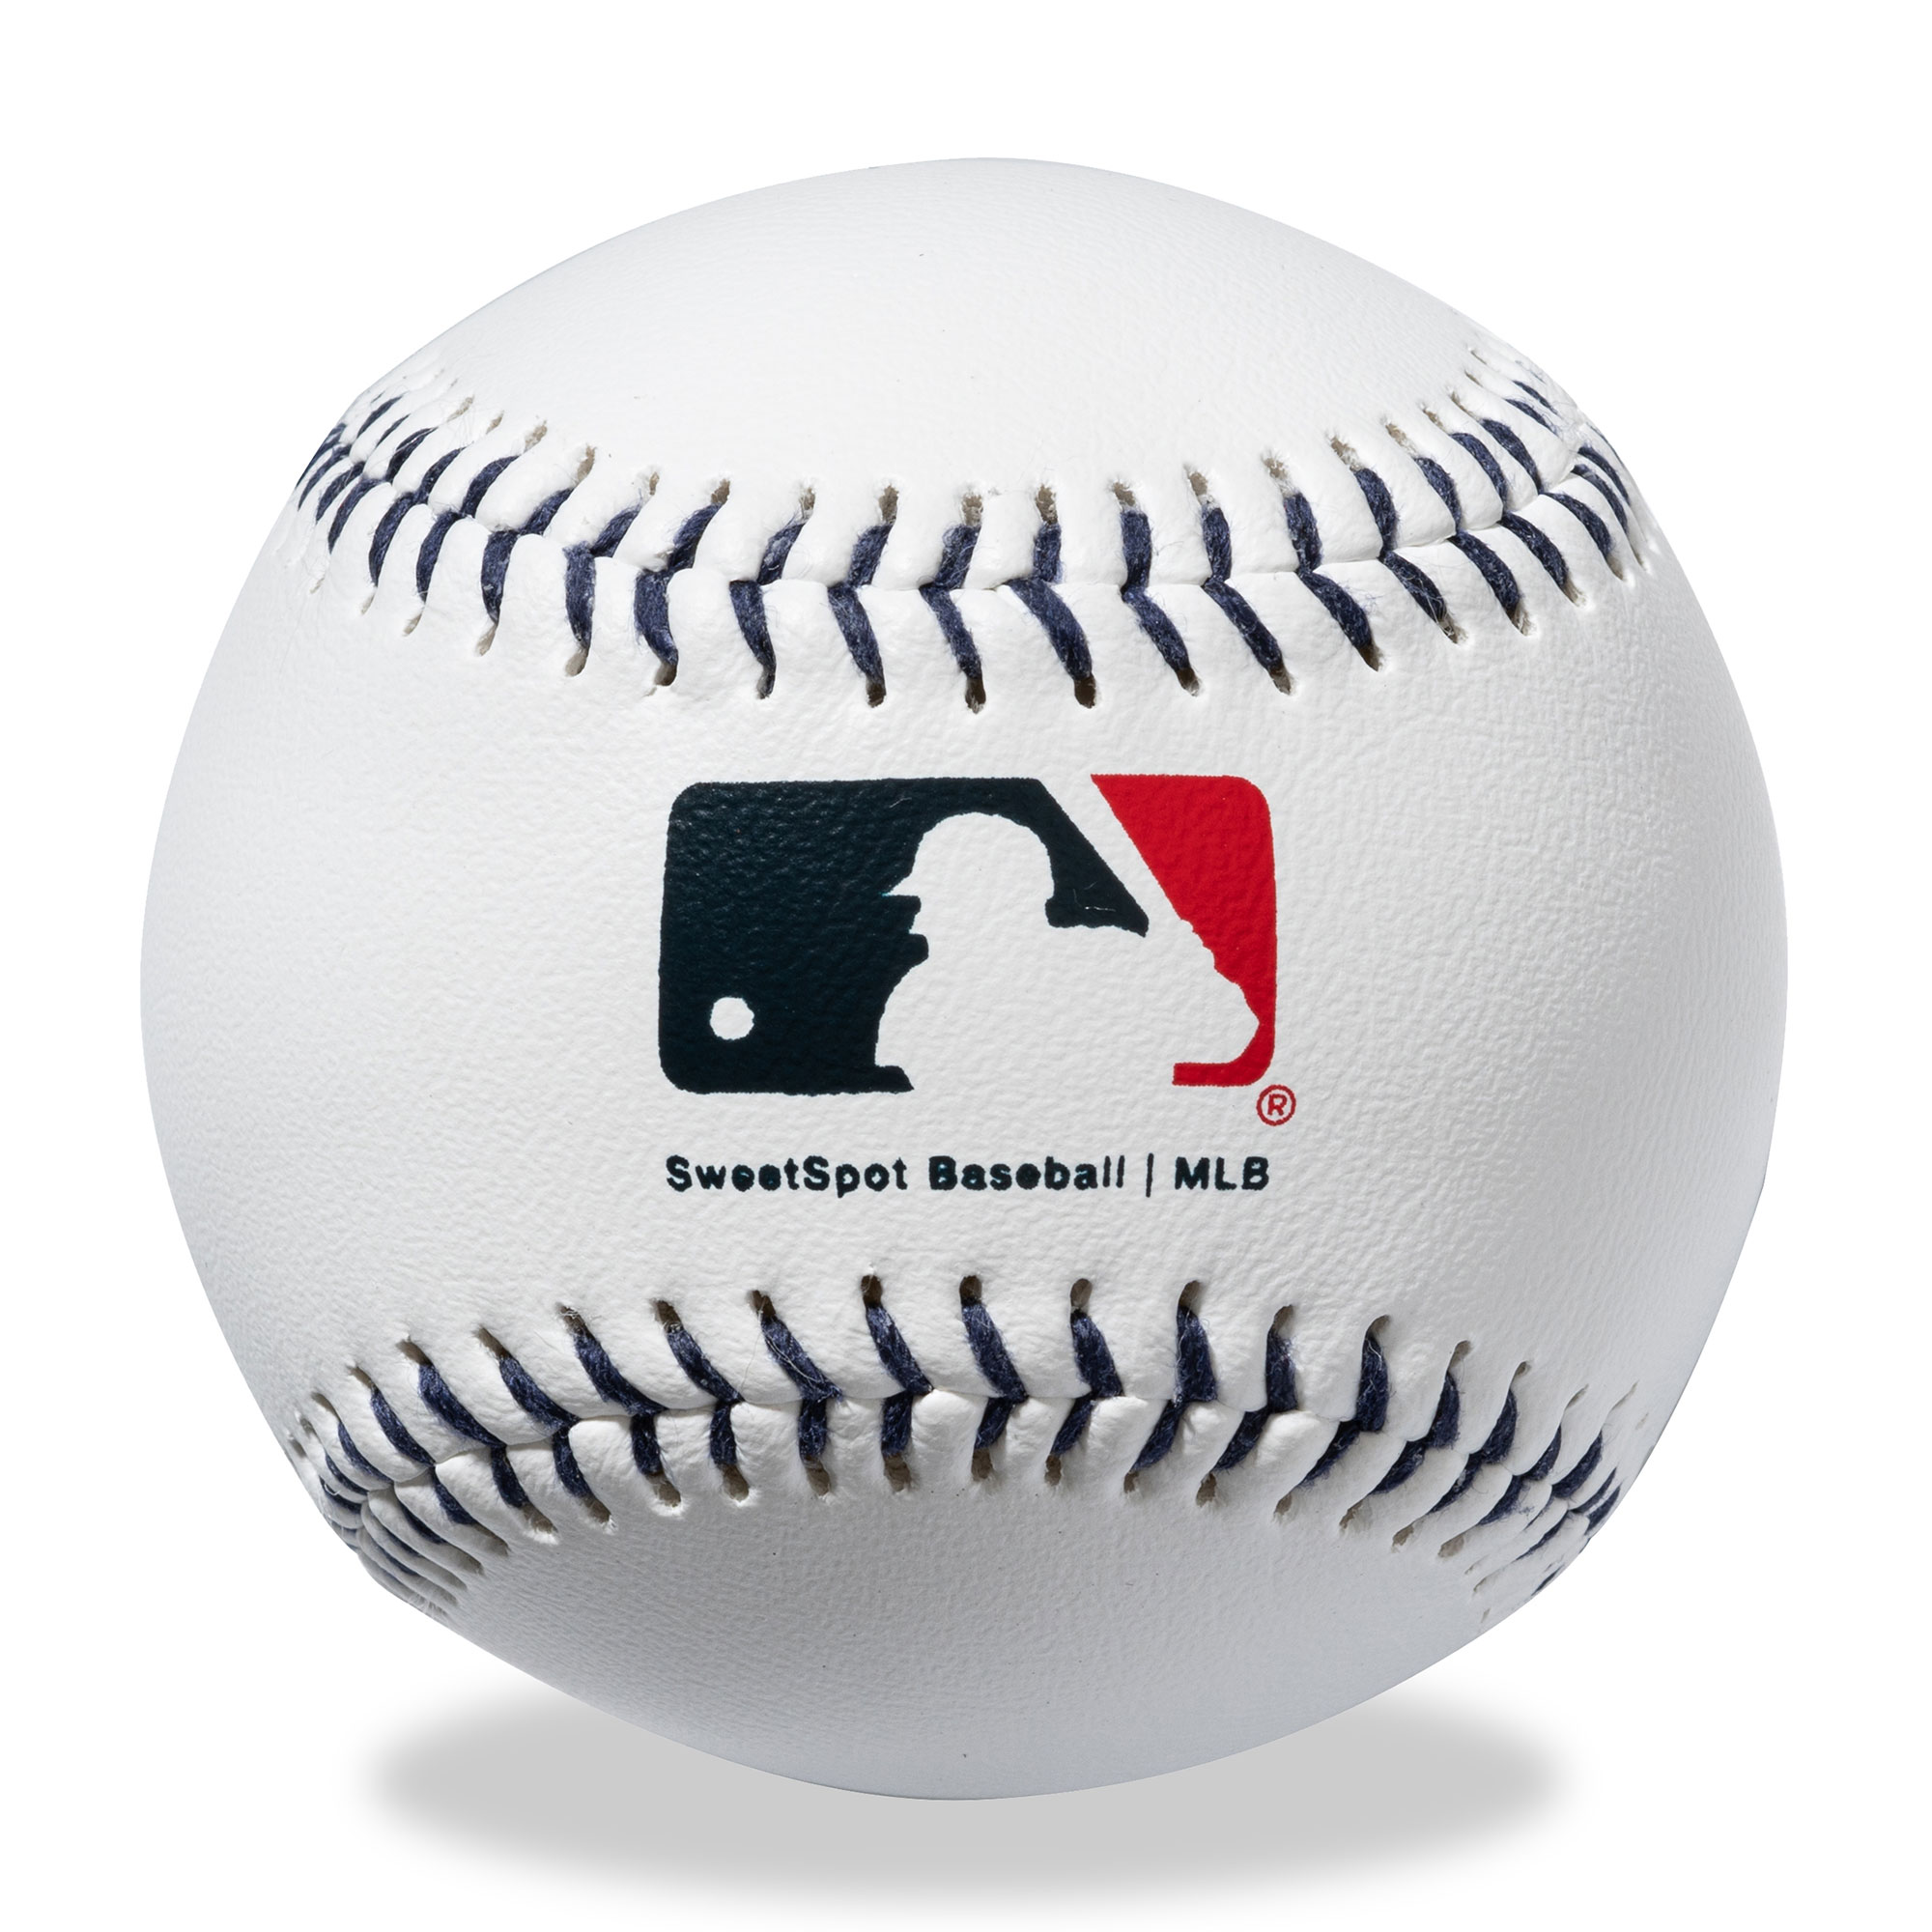 SweetSpot Baseball Miami Marlins Spaseball 2-Pack - image 3 of 5